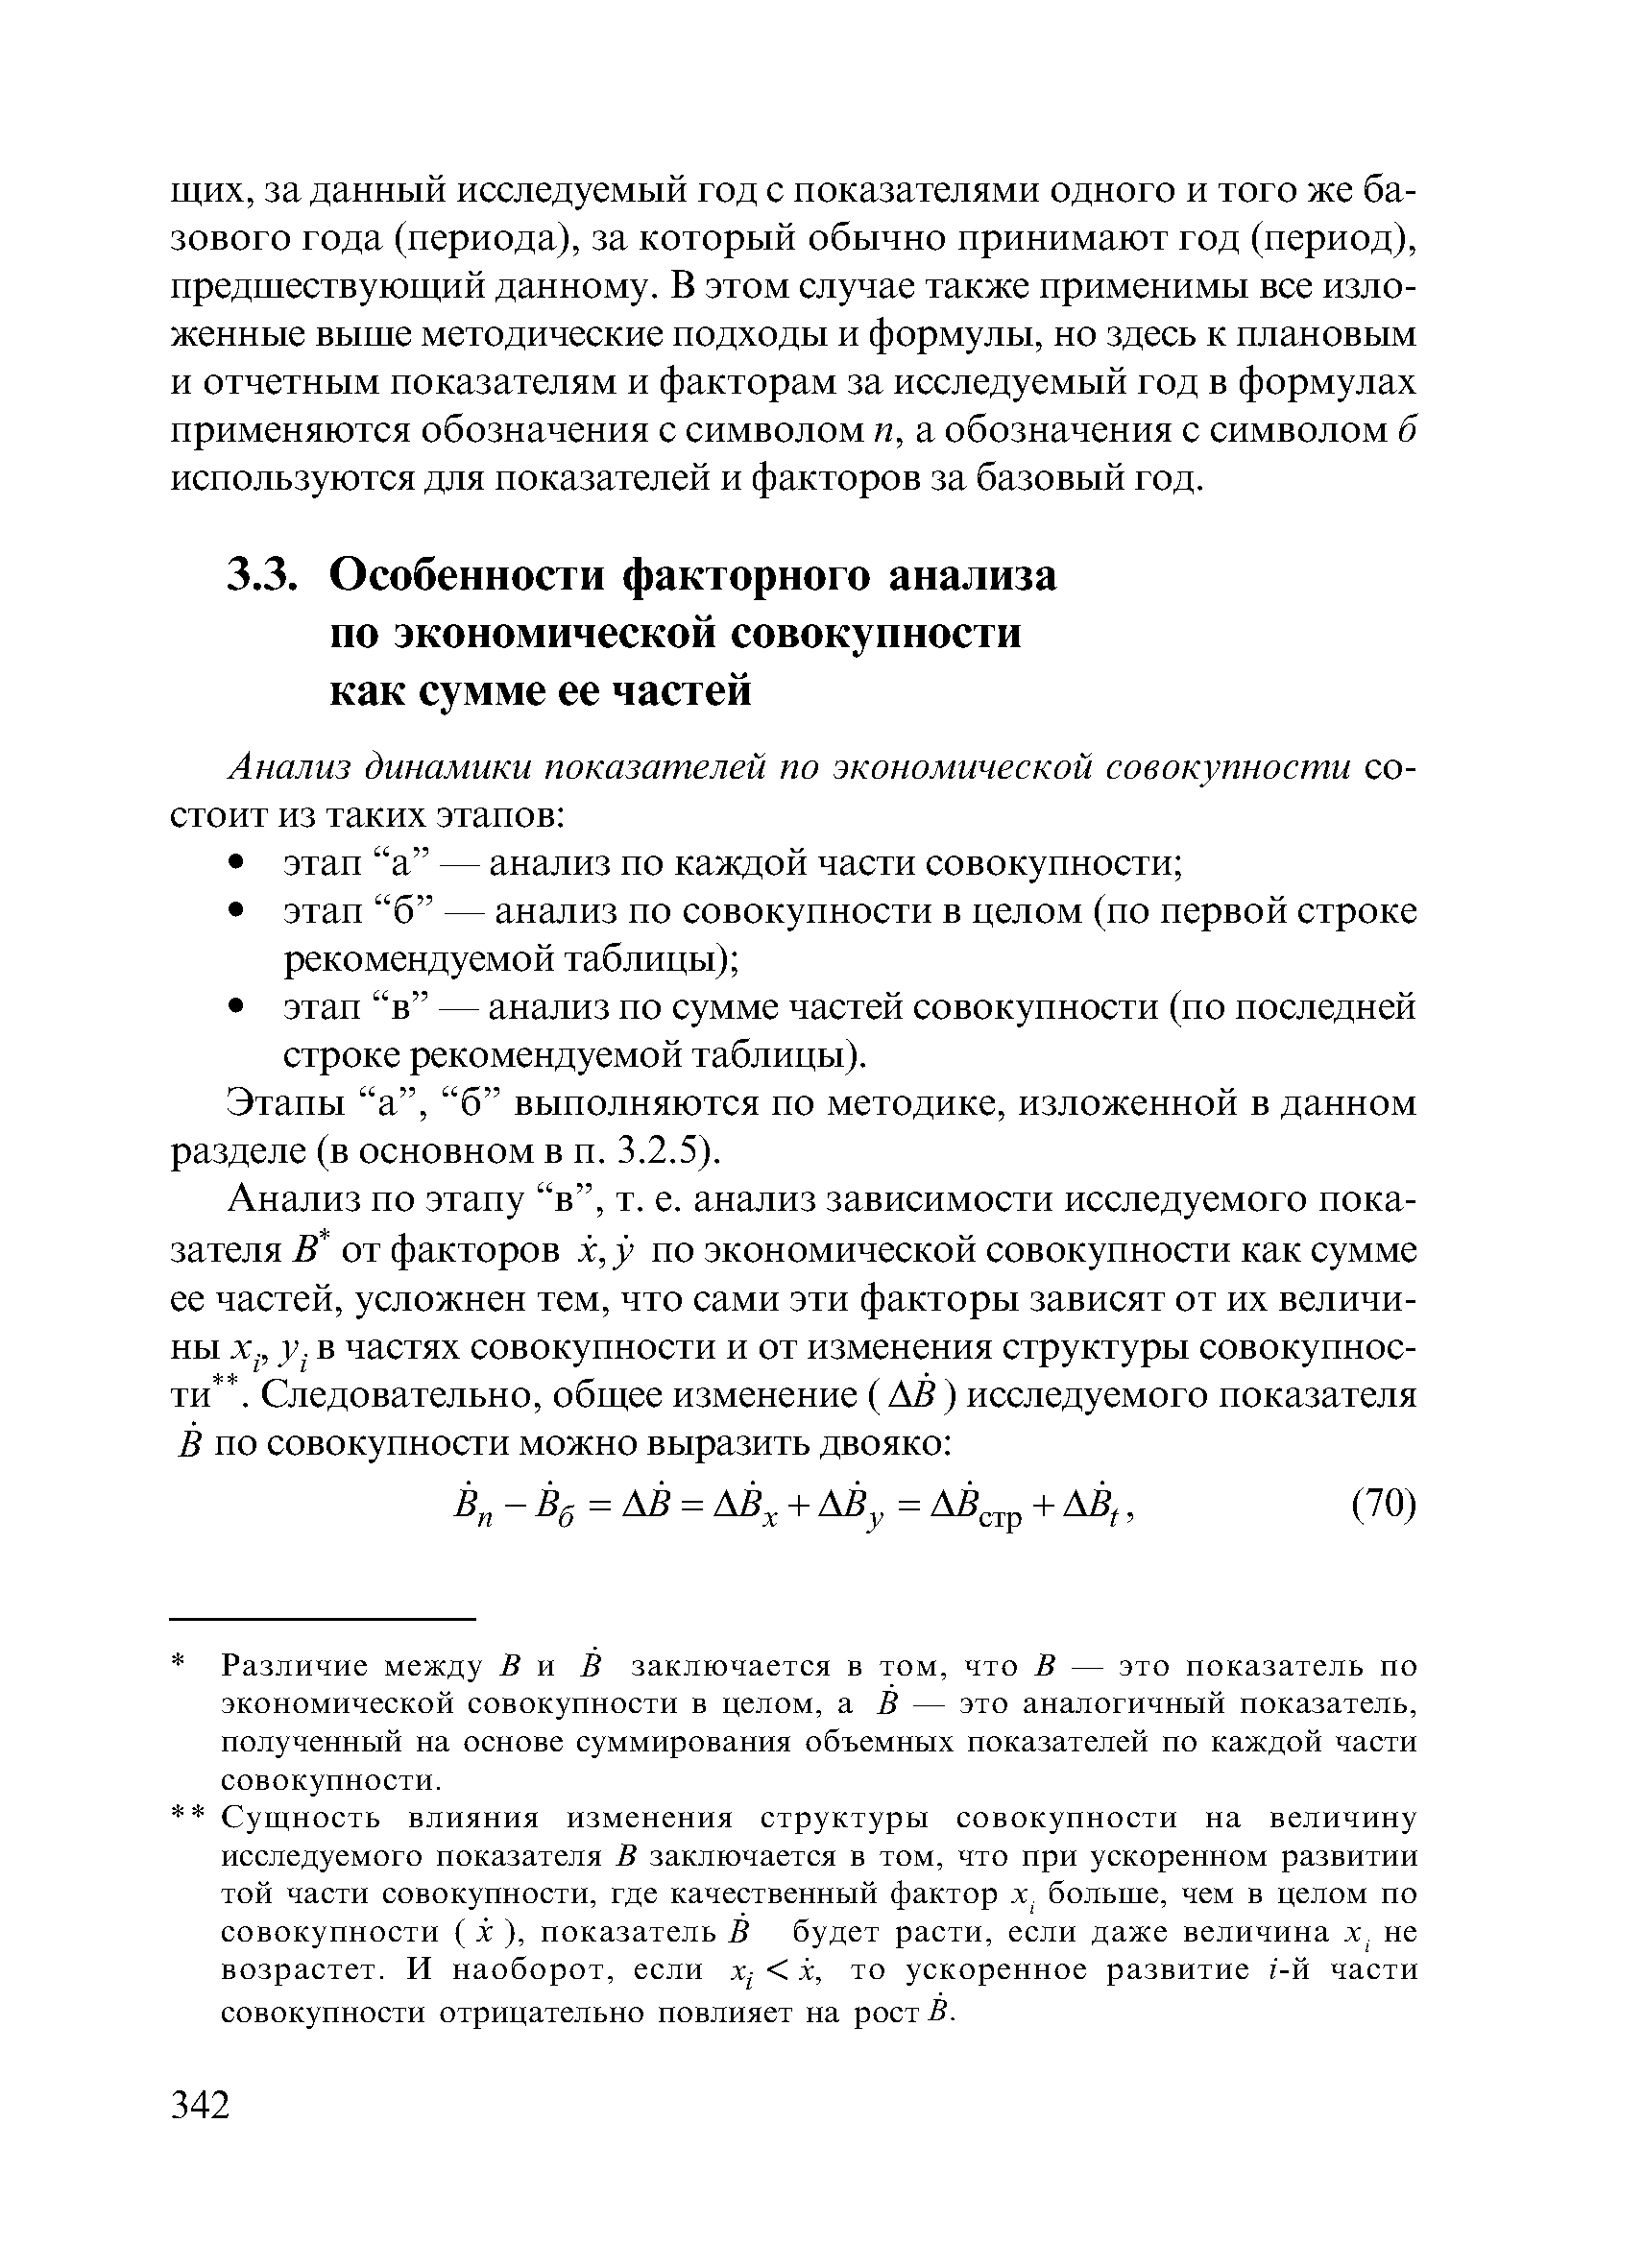 Этапы а , б выполняются по методике, изложенной в данном разделе (в основном в п. 3.2.5).
